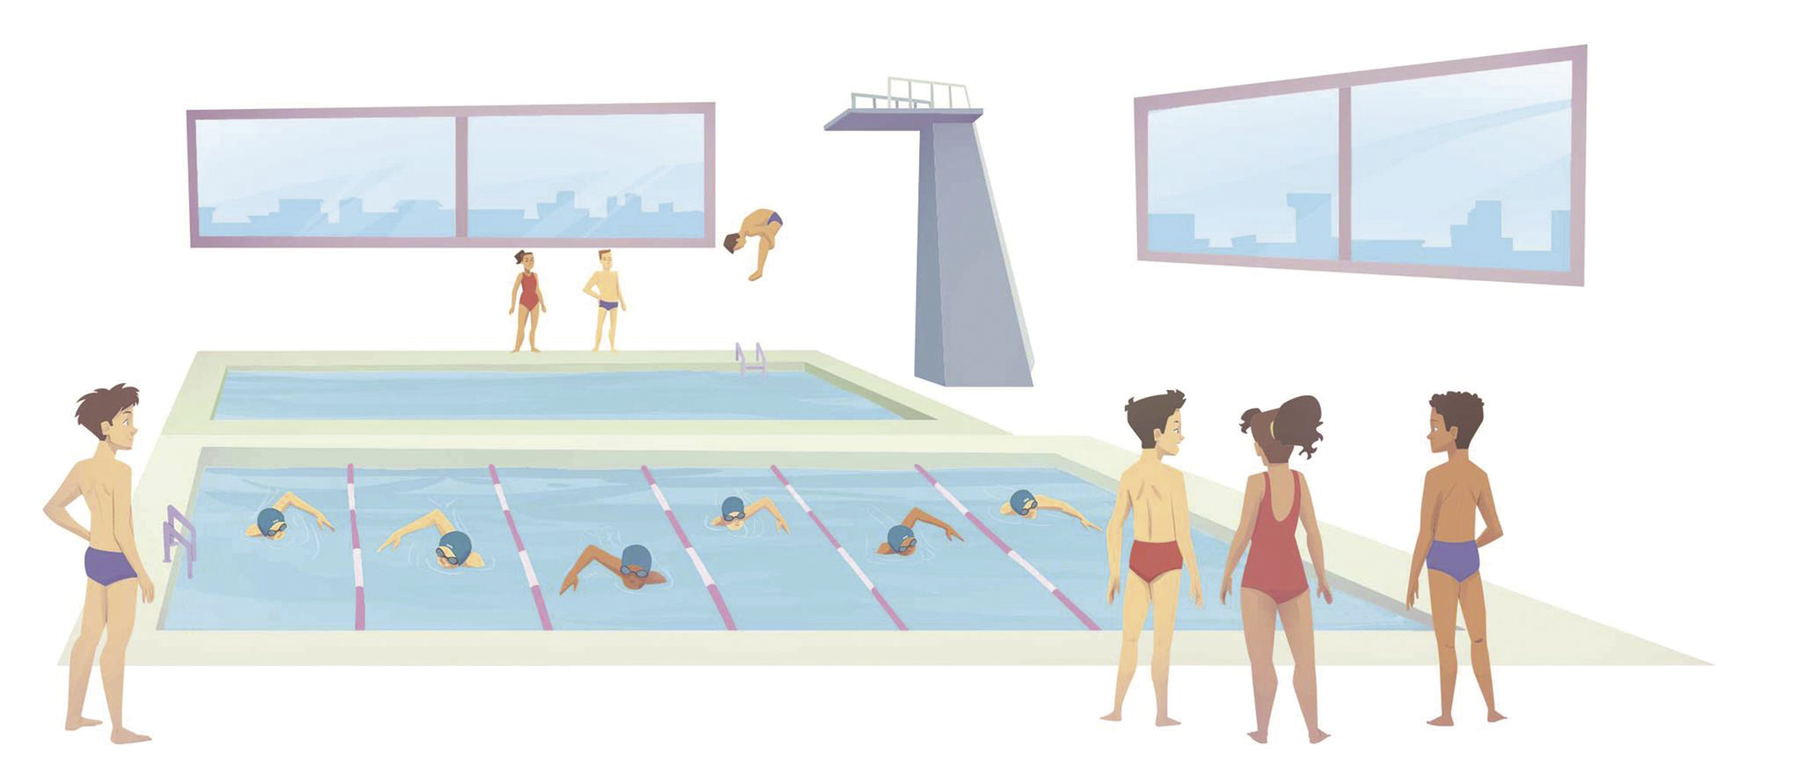 Ilustração. À esquerda, menino de sunga. À direita, dois meninos de sunga e uma menina de maiô. Todos estão em pé na frente de uma piscina com raias. Dentro da piscina, pessoas nadando. Ao fundo, mais pessoas em pé e outra piscina com um trampolim.